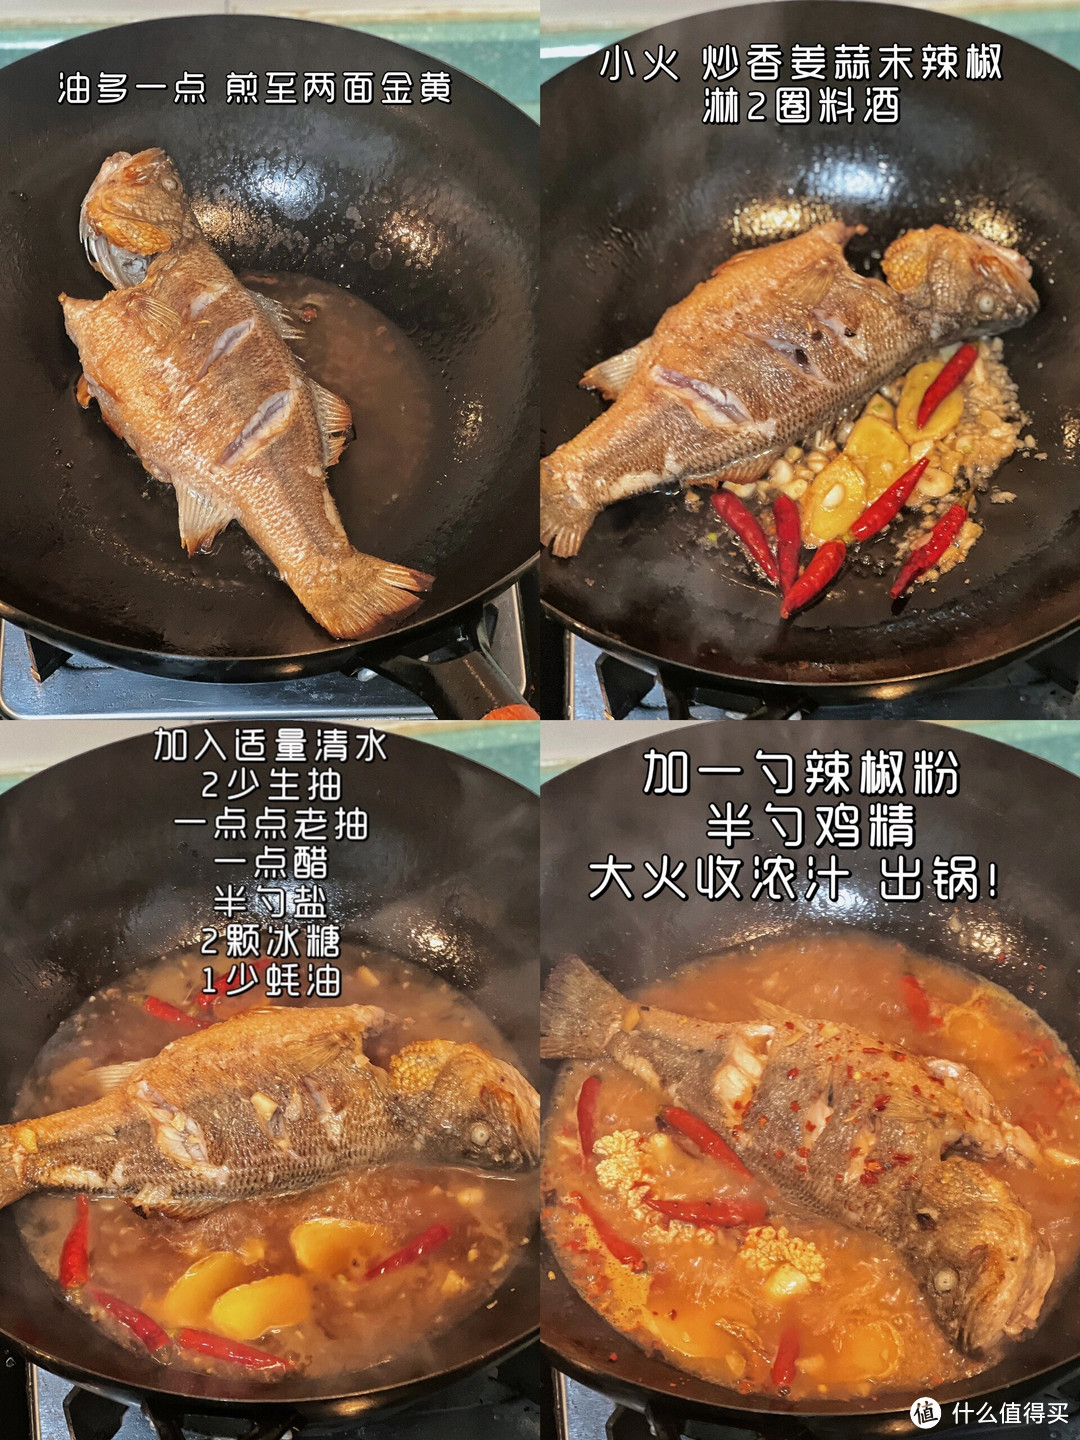 红烧香辣鲈鱼的烹饪